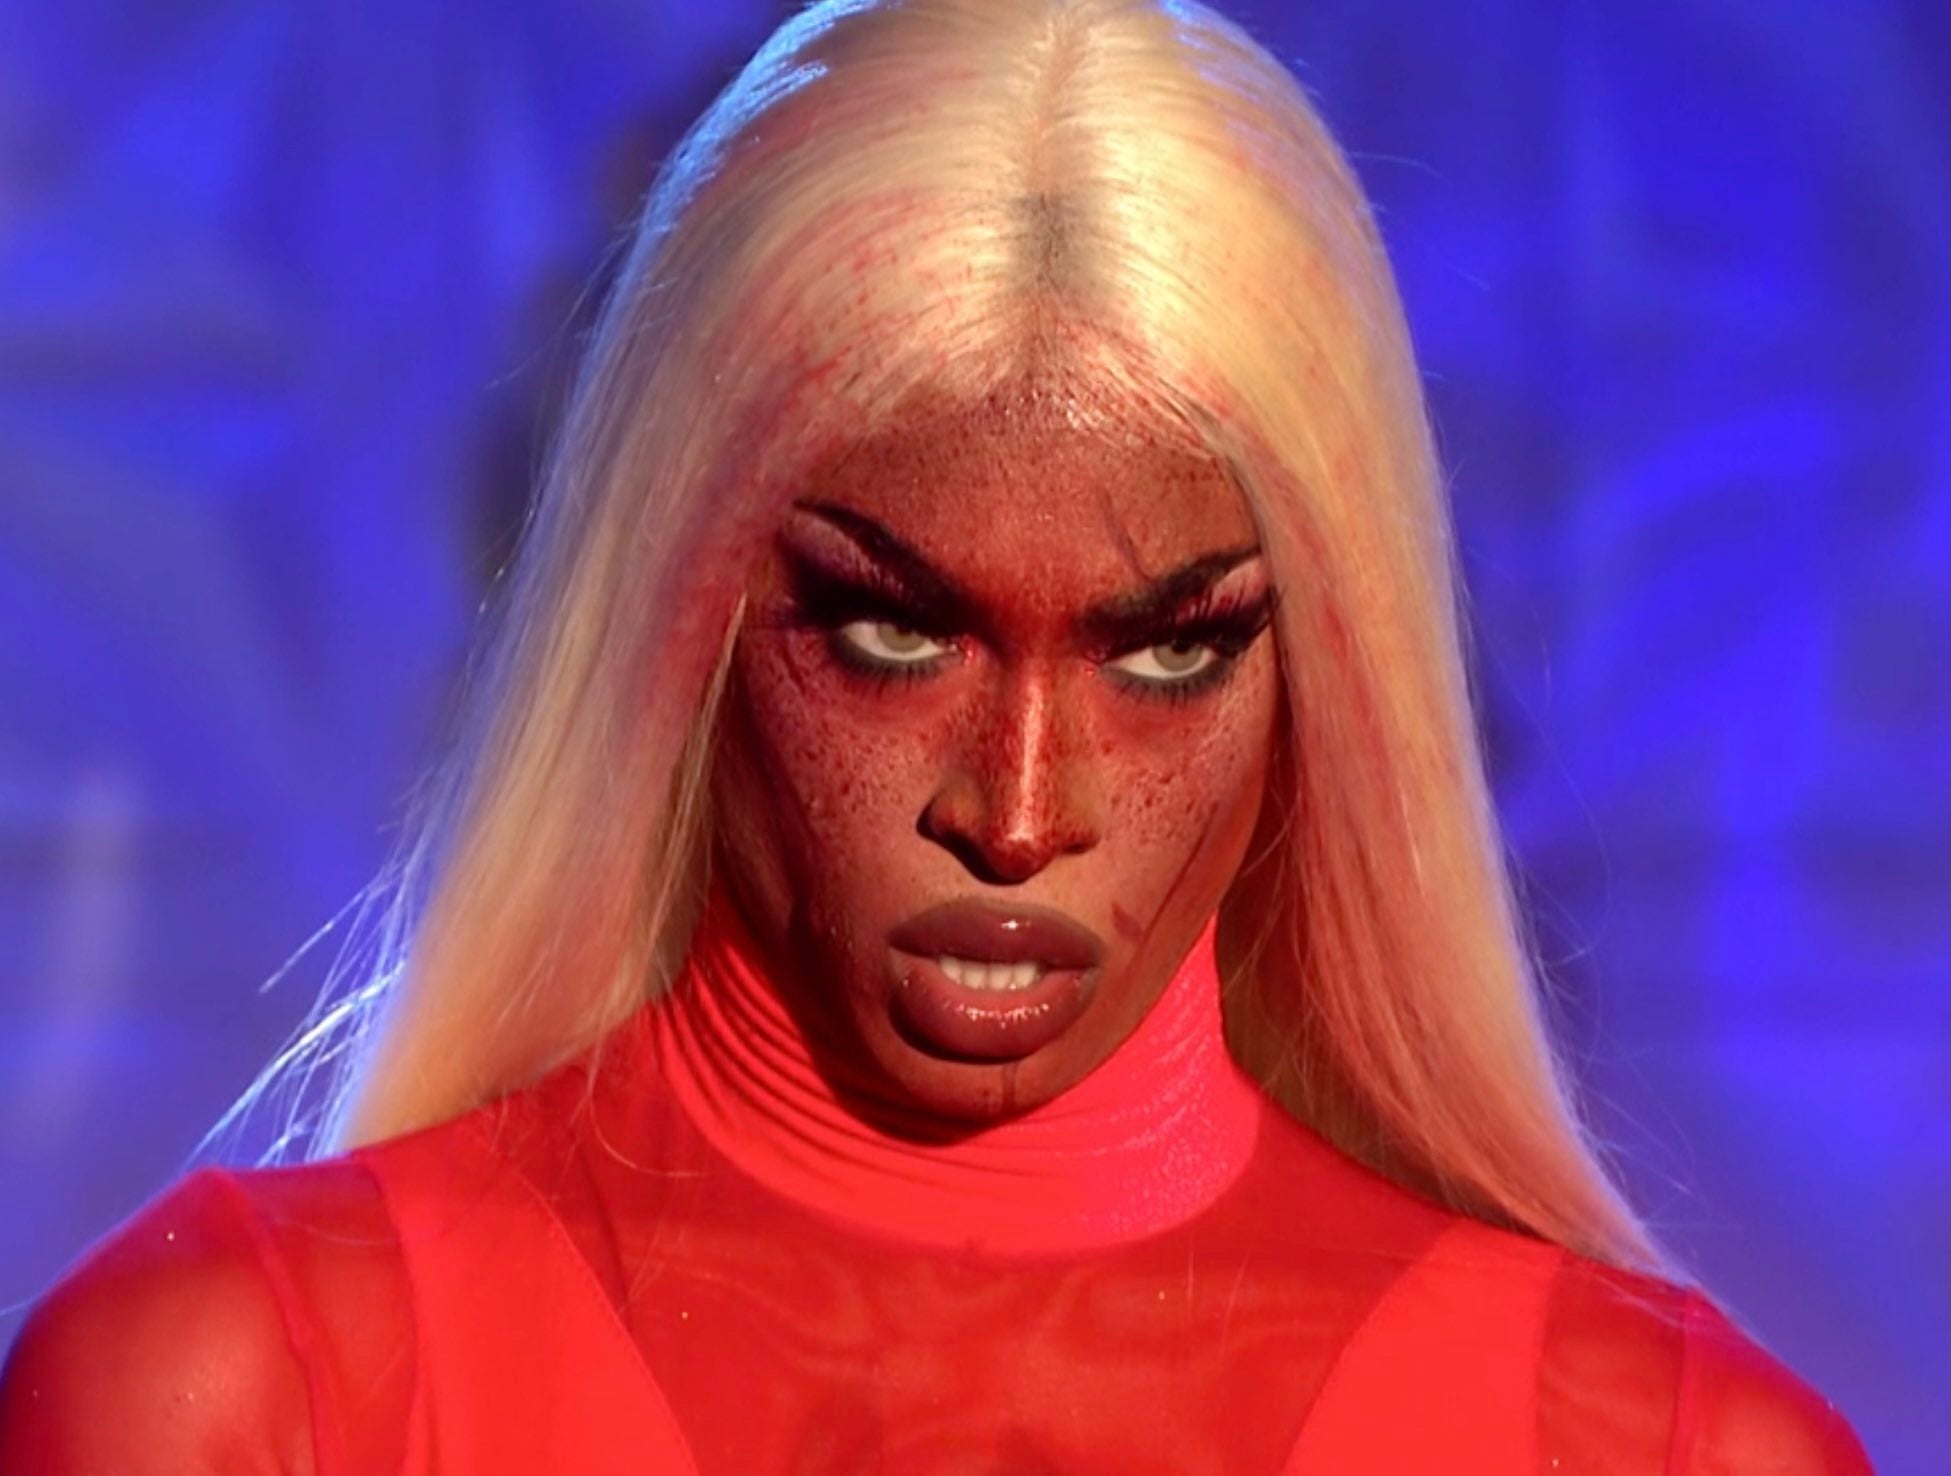 Cena de uma Dublagem da 2ª temporada de Drag Race UK. Nela, vemos um close no rosto de Tayce, uma drag queen negra, loira e com sangue no rosto. Ela veste vestido vermelho e olha para a frente, com um olhar determinado. 